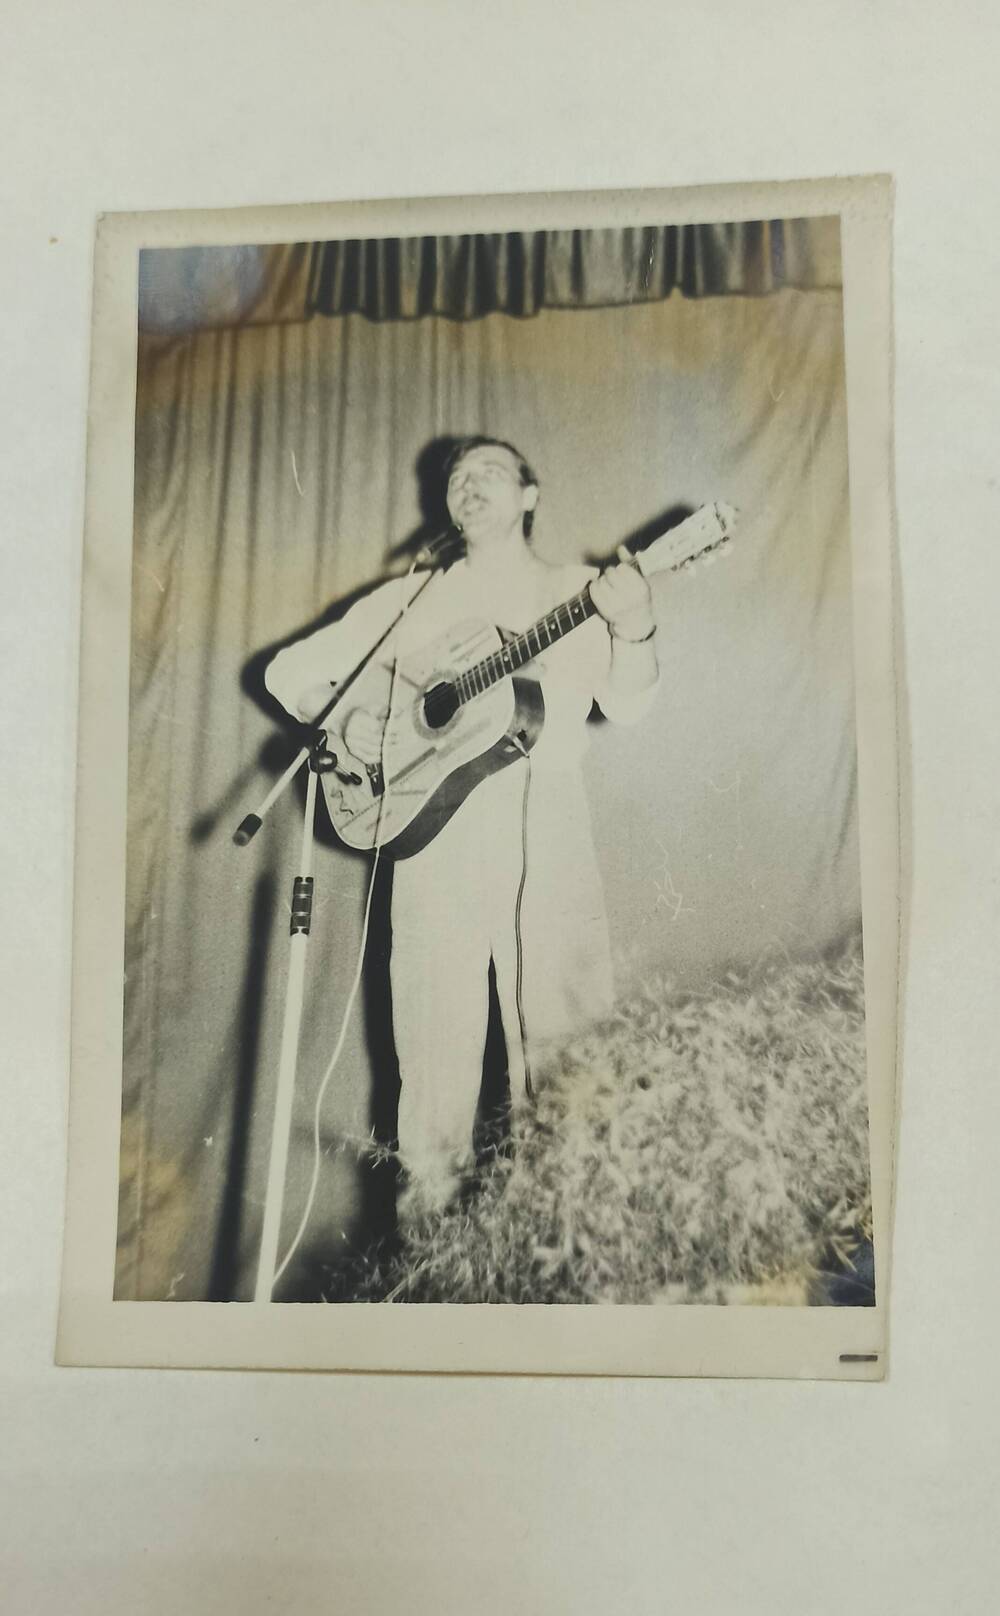 Фотография черно - белая. Изображен мужчина с гитарой.